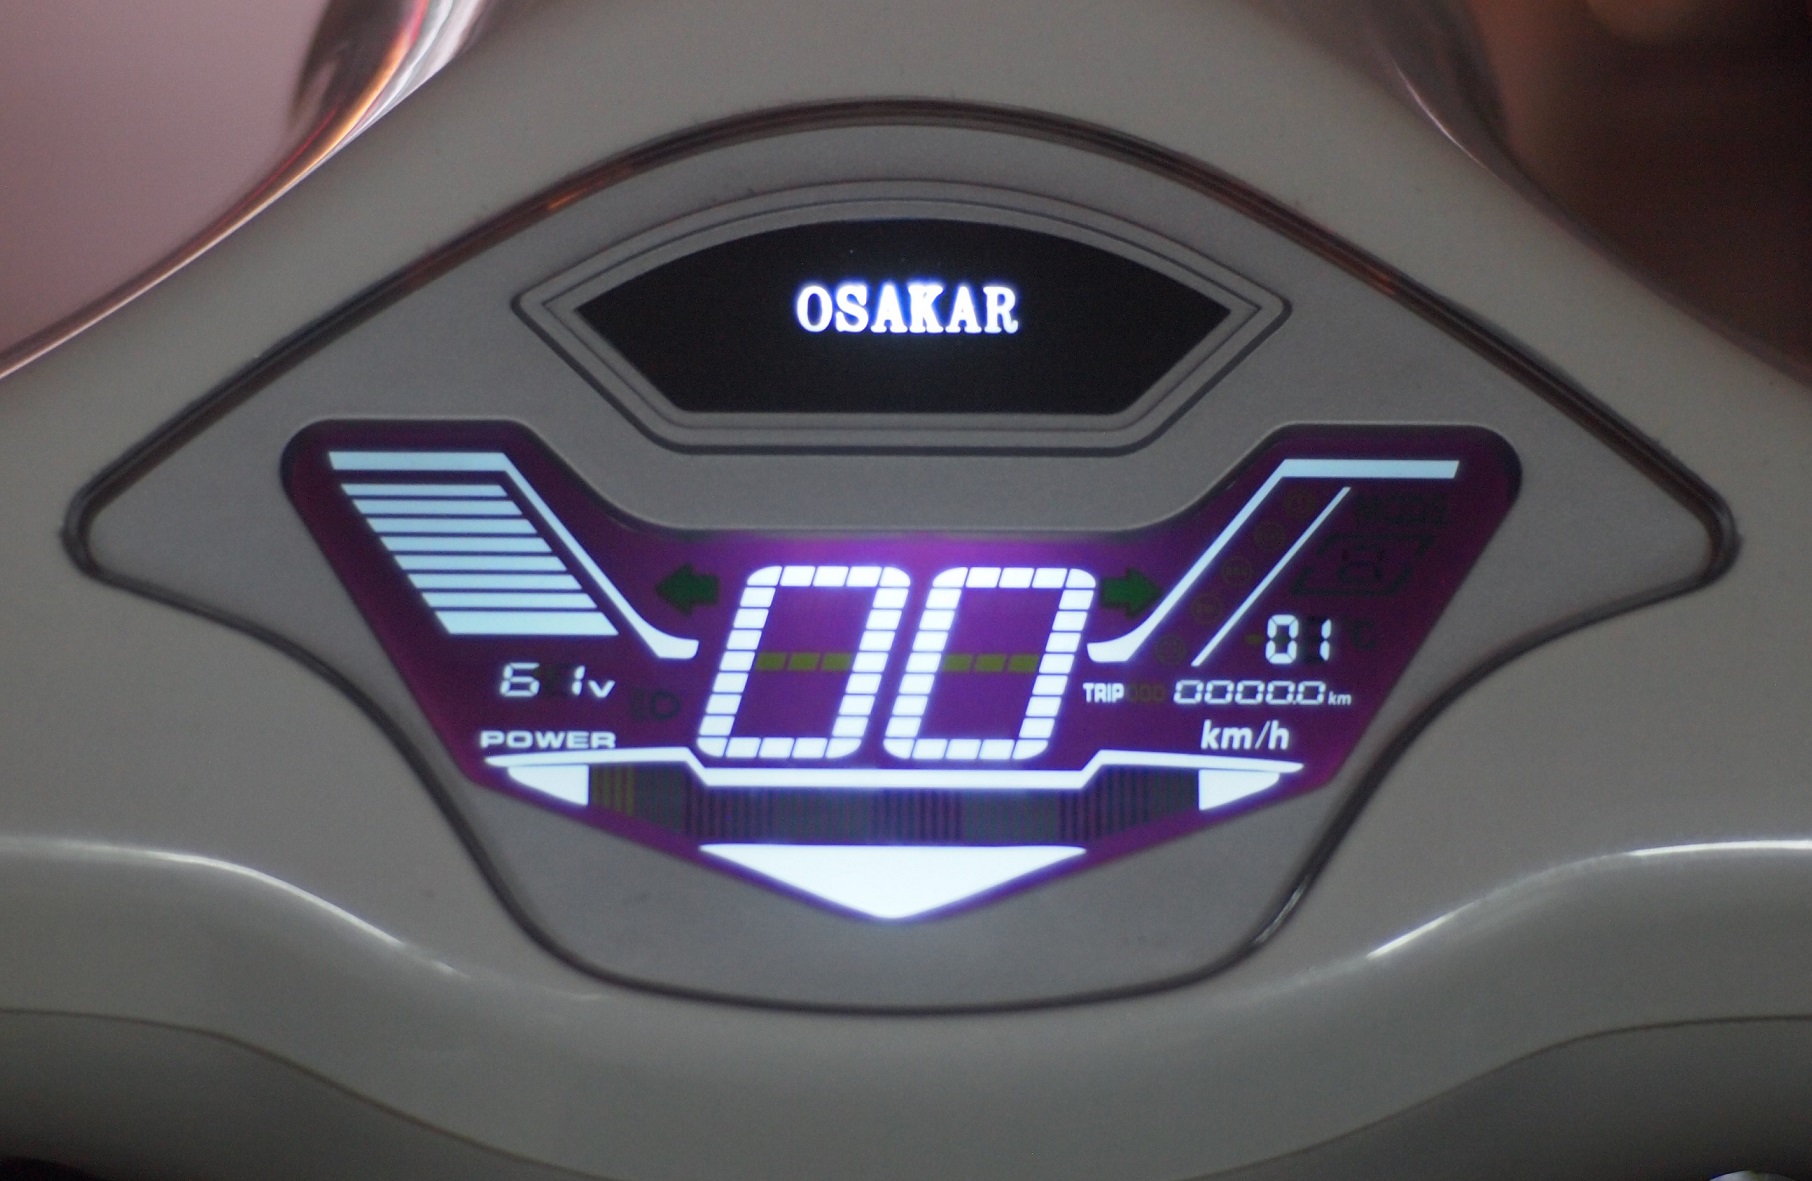 Đồng hồ điện tử xe máy điện Vespa Osakar Nispa